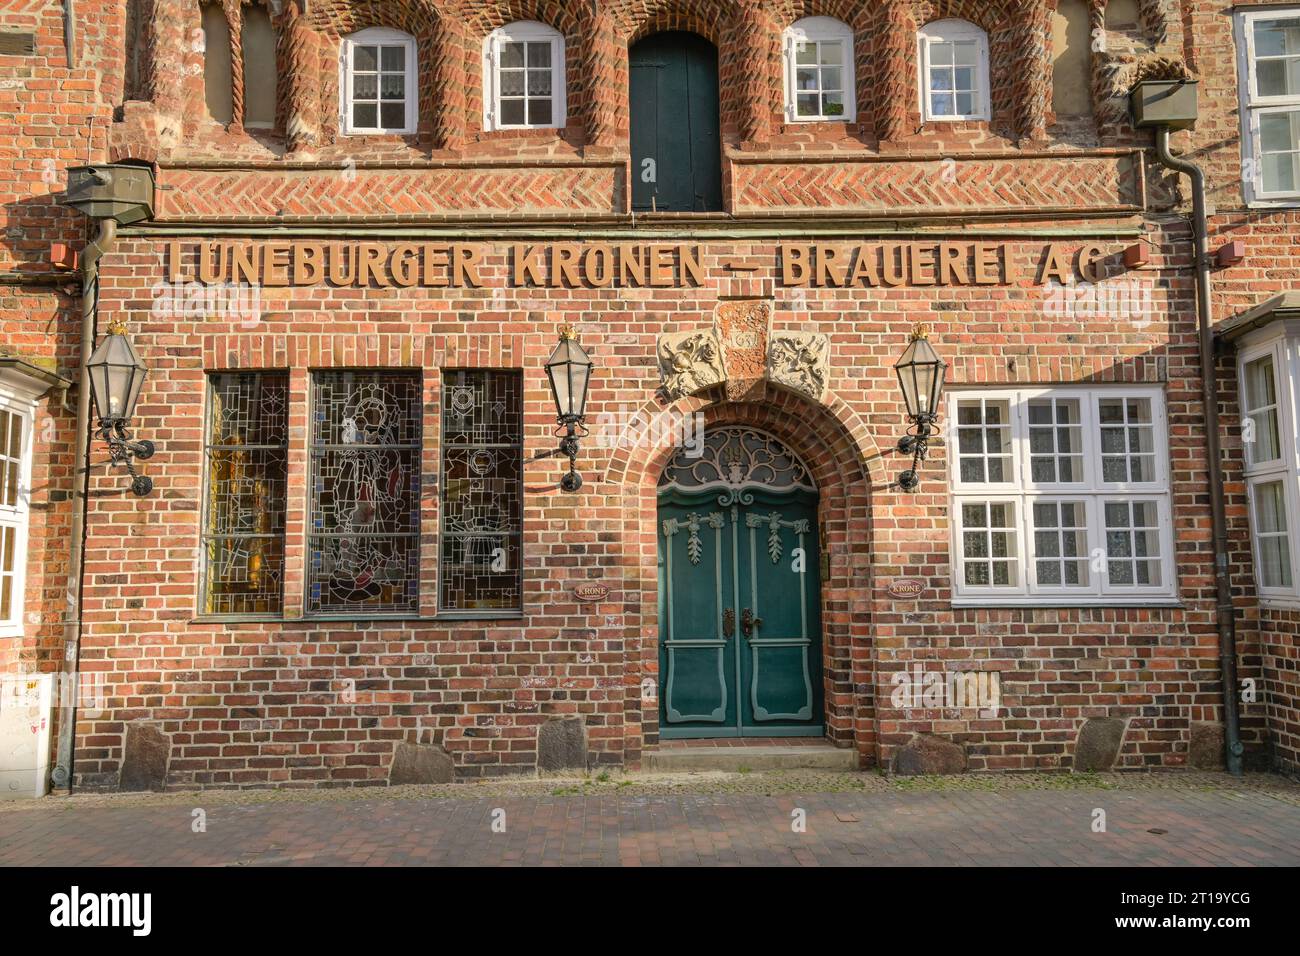 Altbau, ehemalige Lüneburger Kronen-Brauerei, Heiligengeiststraße, Lüneburg, Niedersachsen, Deutschland Stock Photo